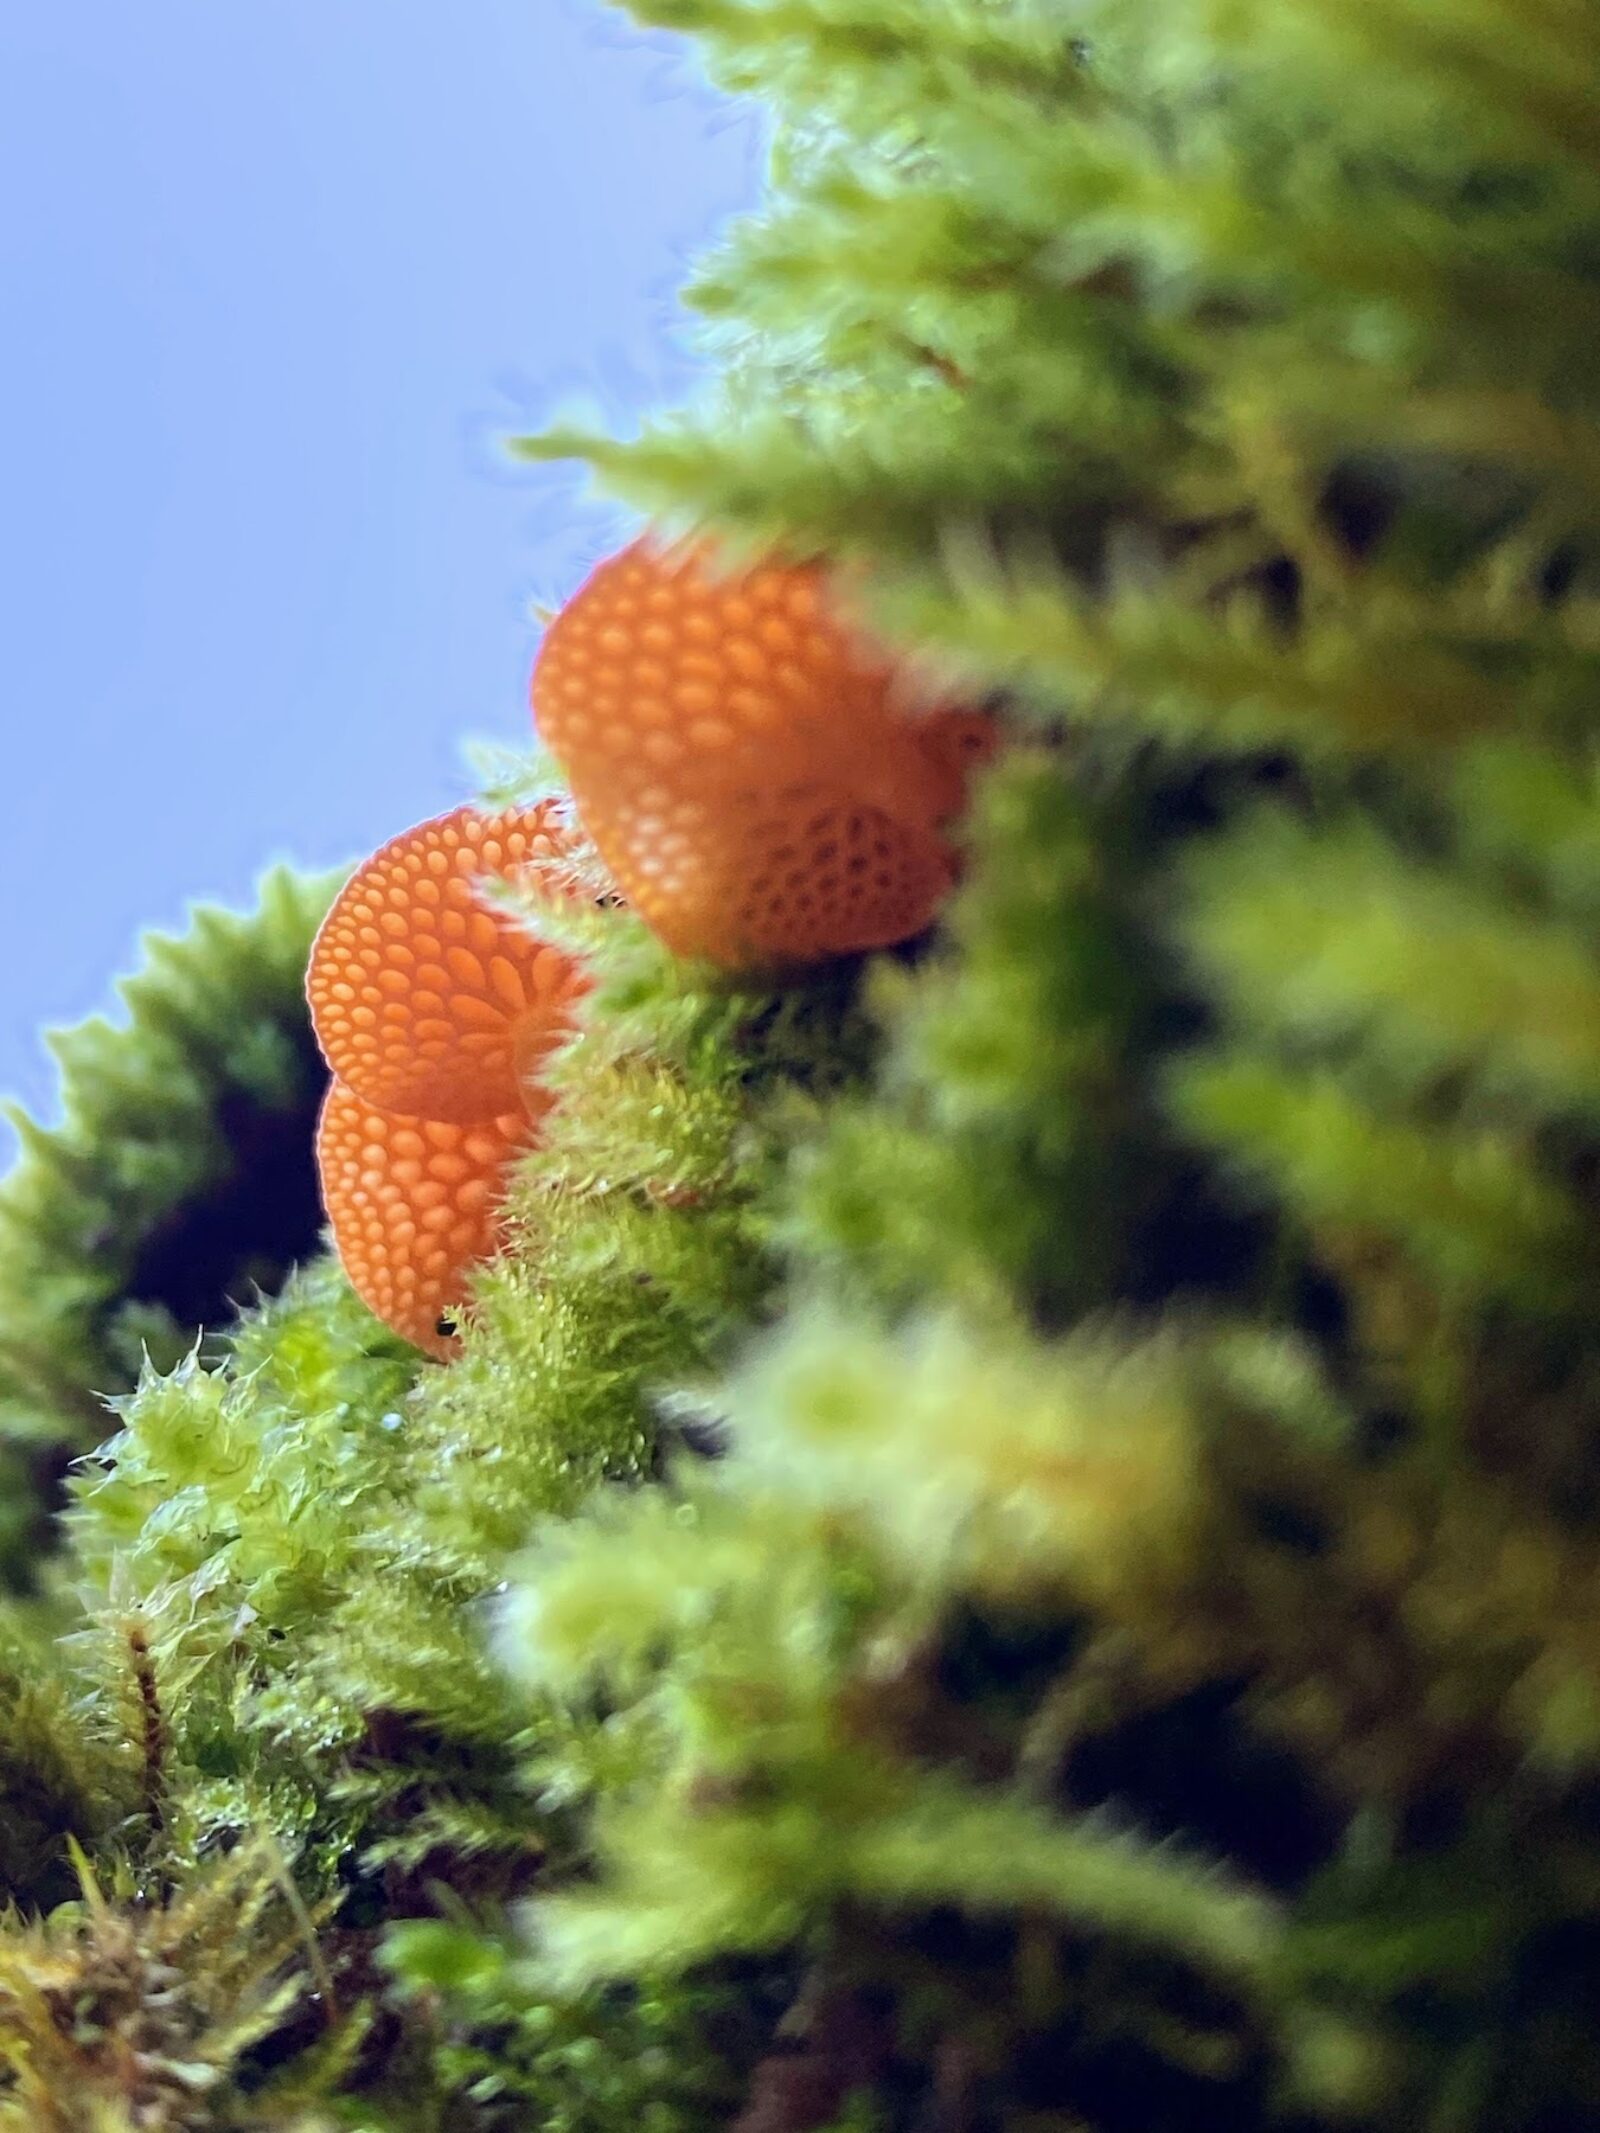 Orange pore fungus and moss